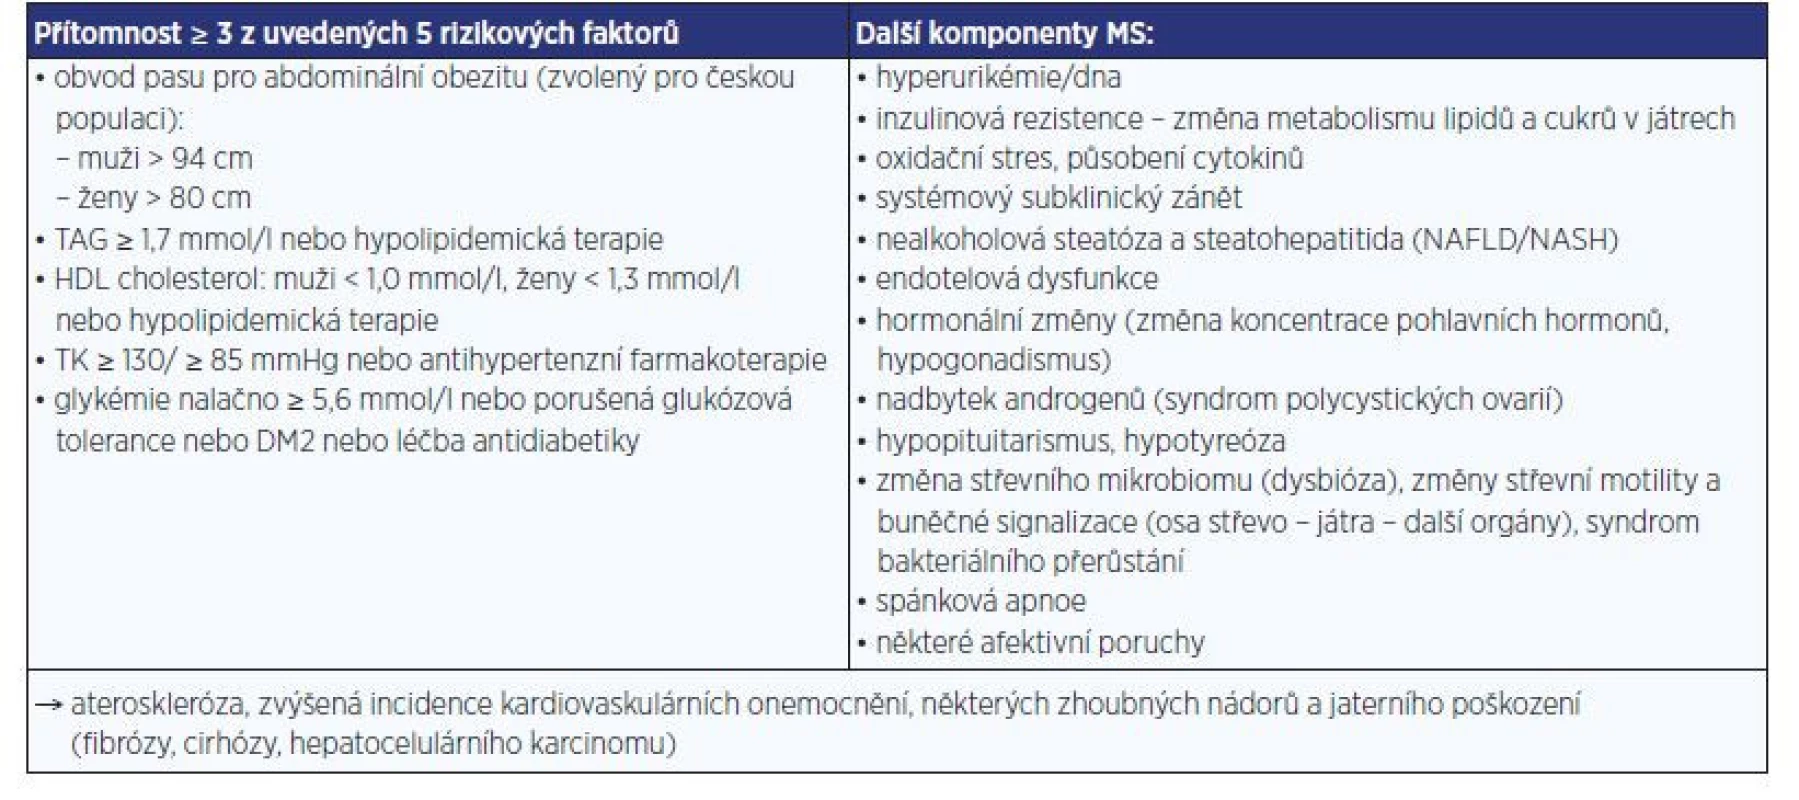 Současná definice metabolického syndromu (MS) dle (2), jeho další komponenty (vpravo)
a důsledky jejich komplexního působení (dole) (3)